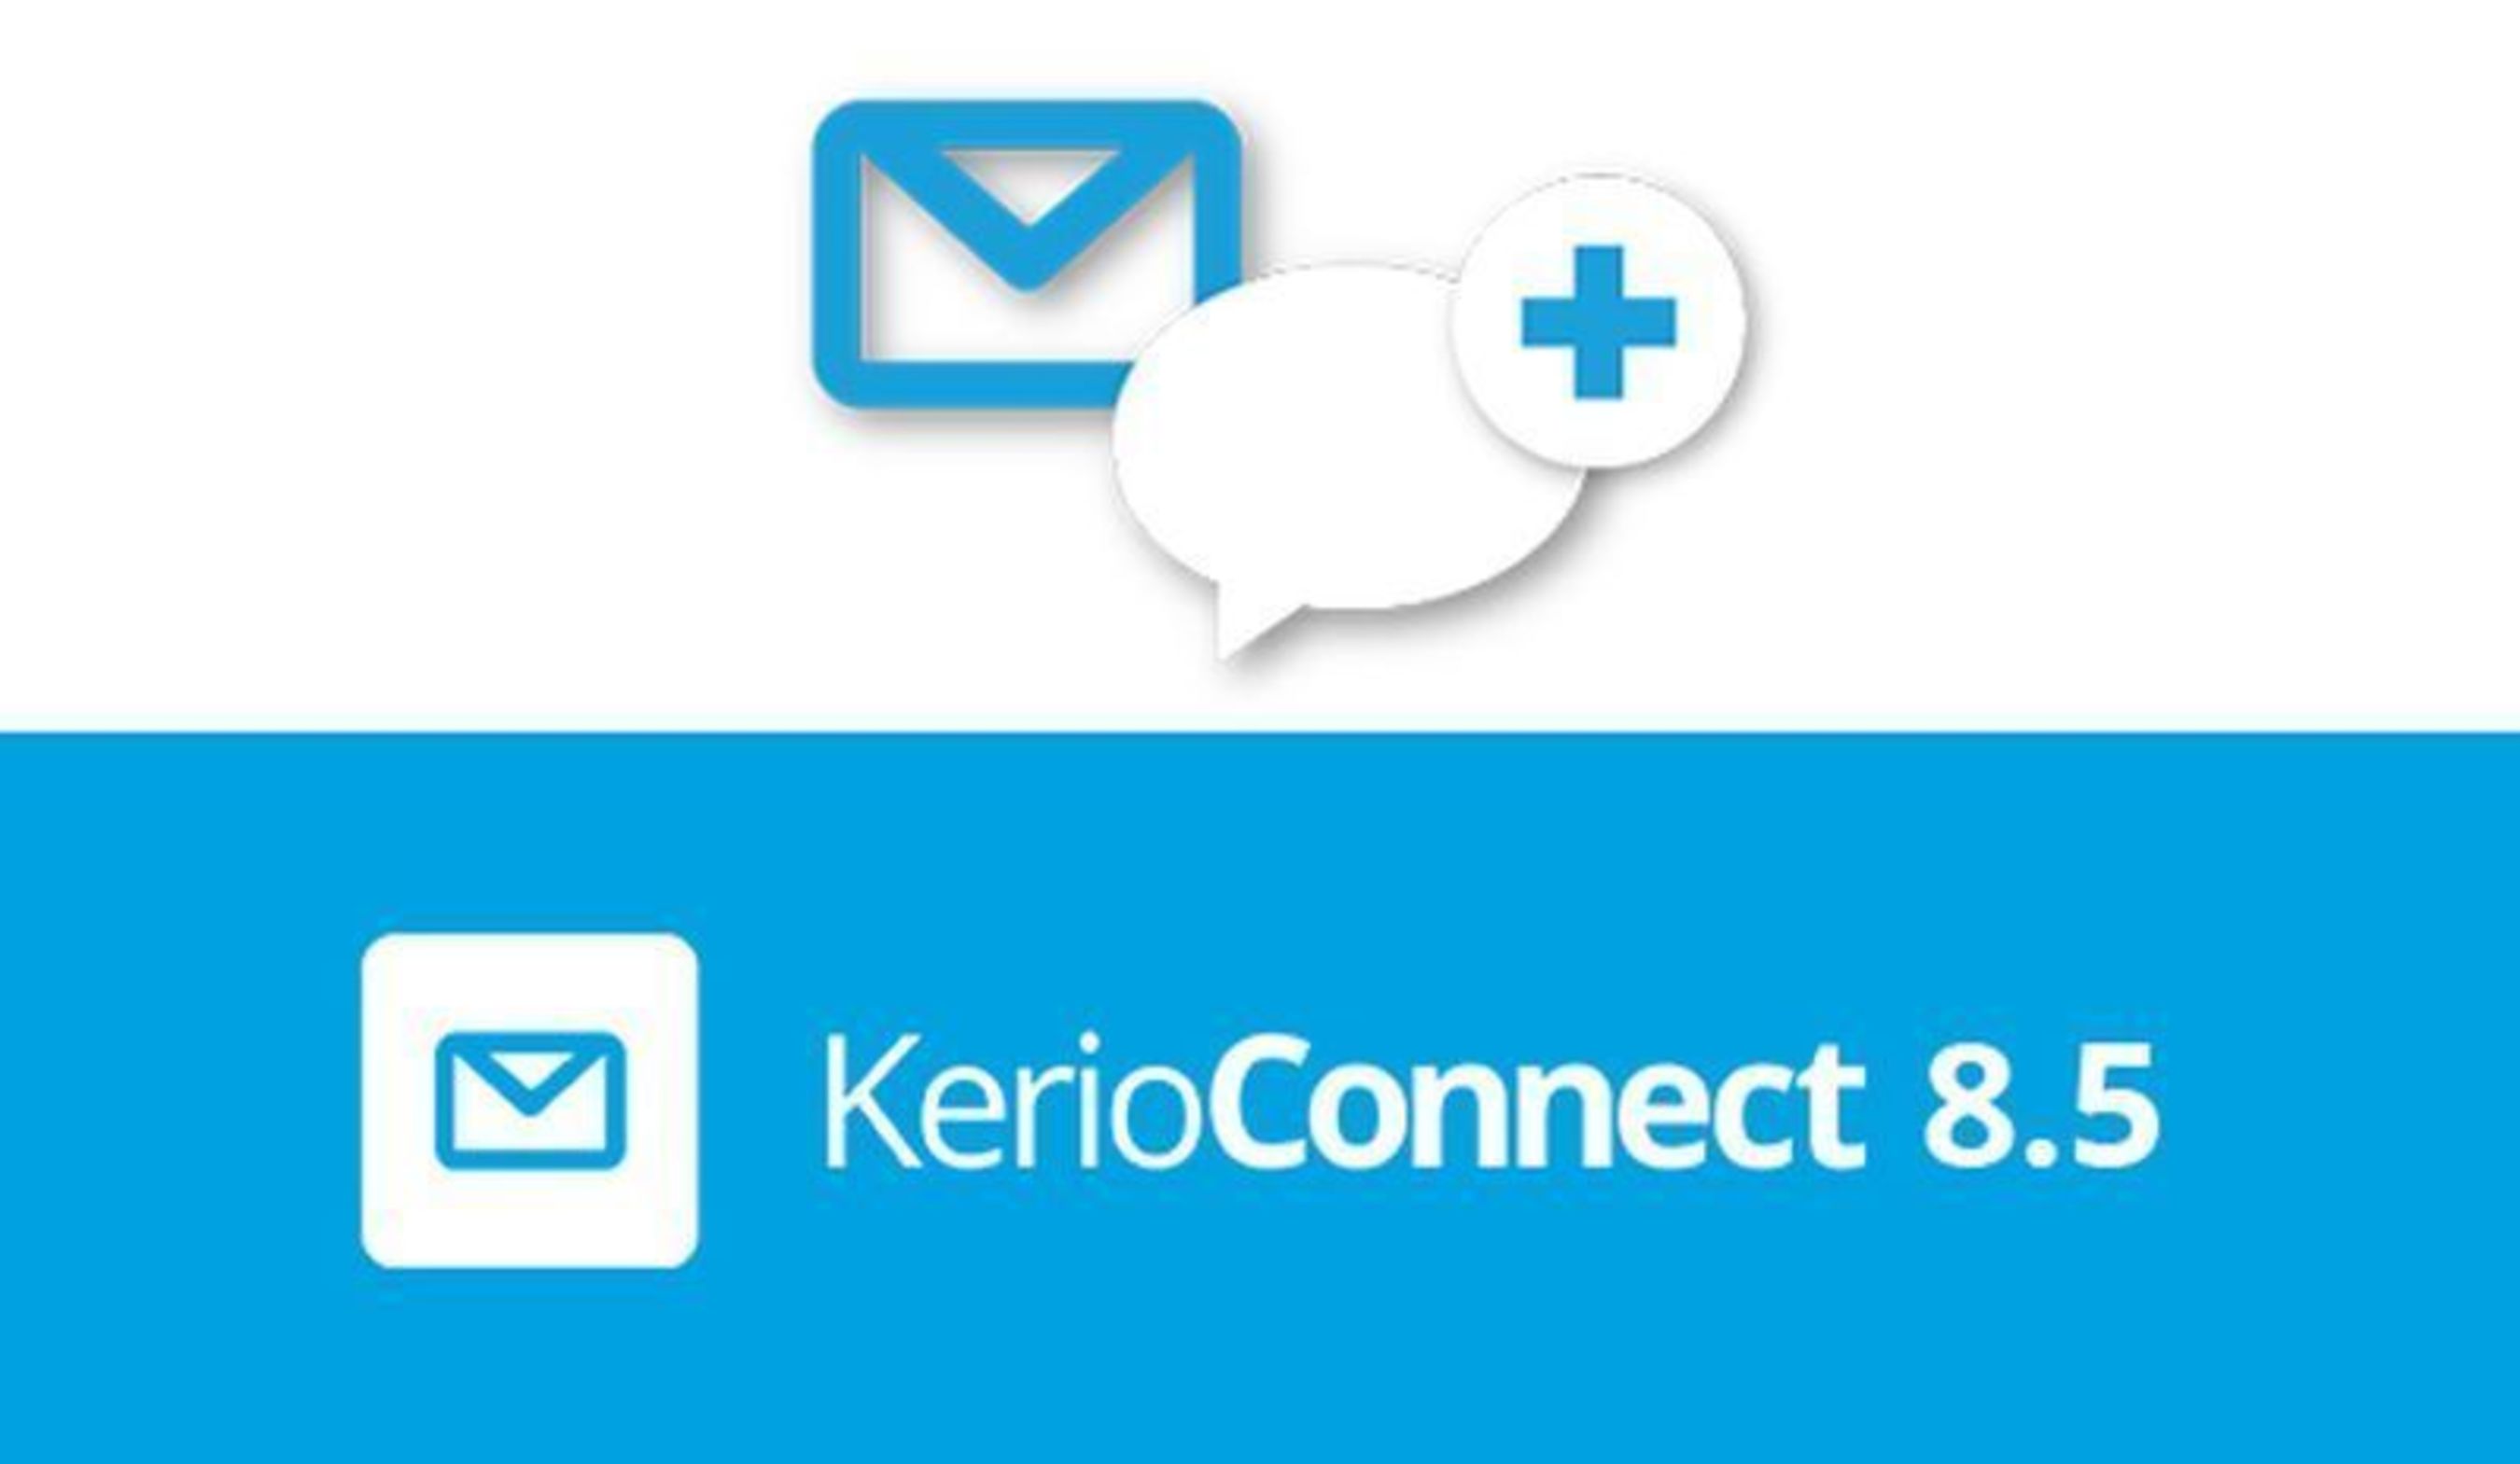 Kerio connect. Kerio connect logo. Kerio connect icon. Kerio connect client.